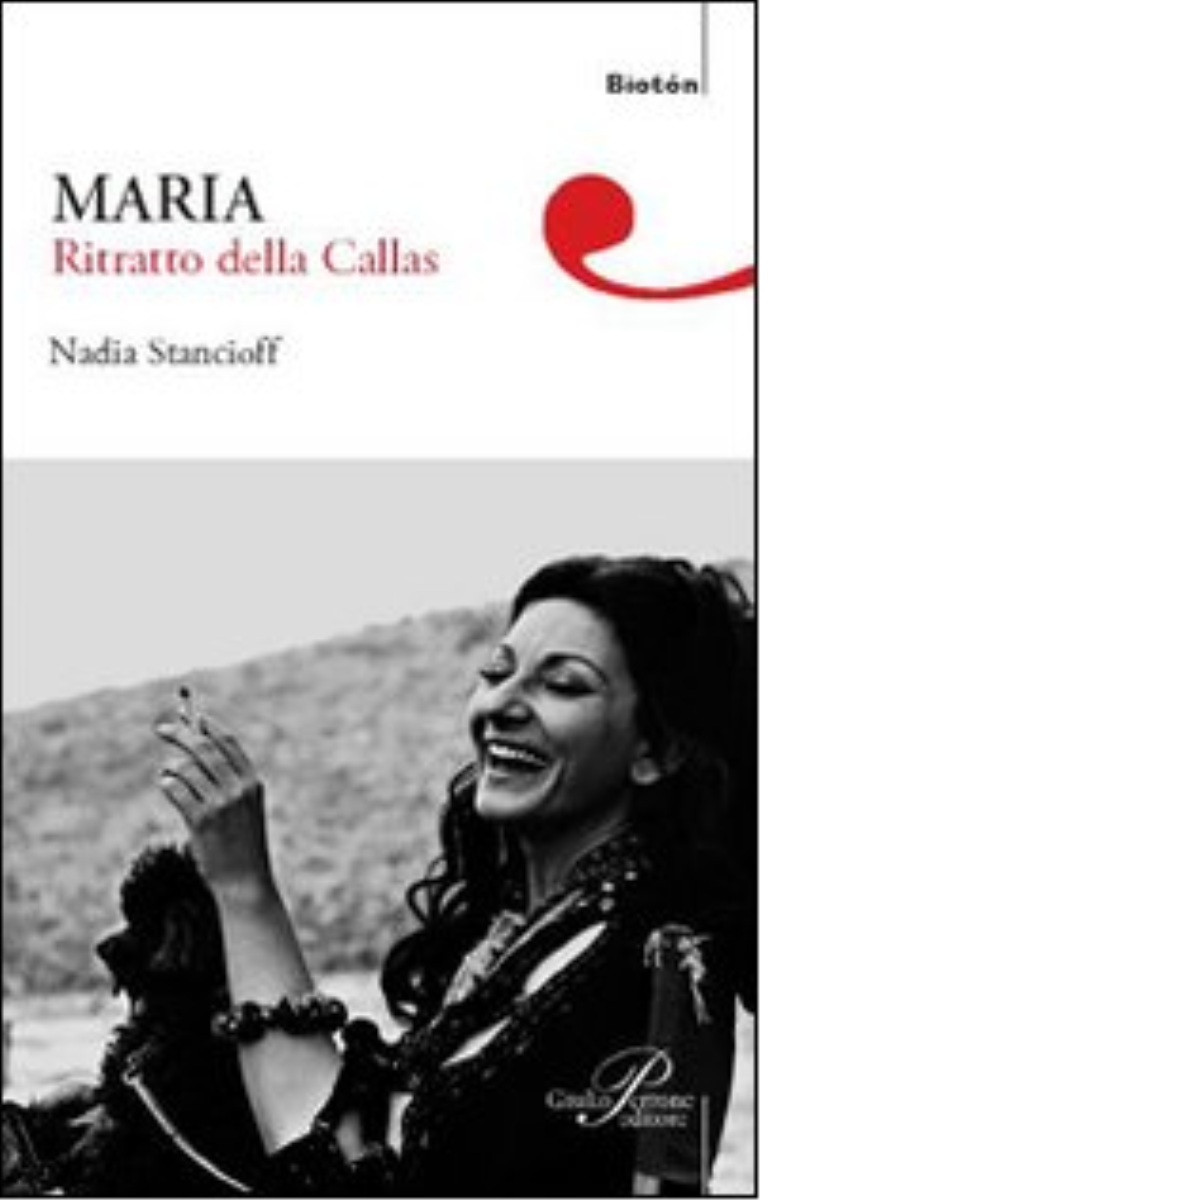 Maria. Ritratto della Callas - Nadia Stancioff - Perrone editore, 2008